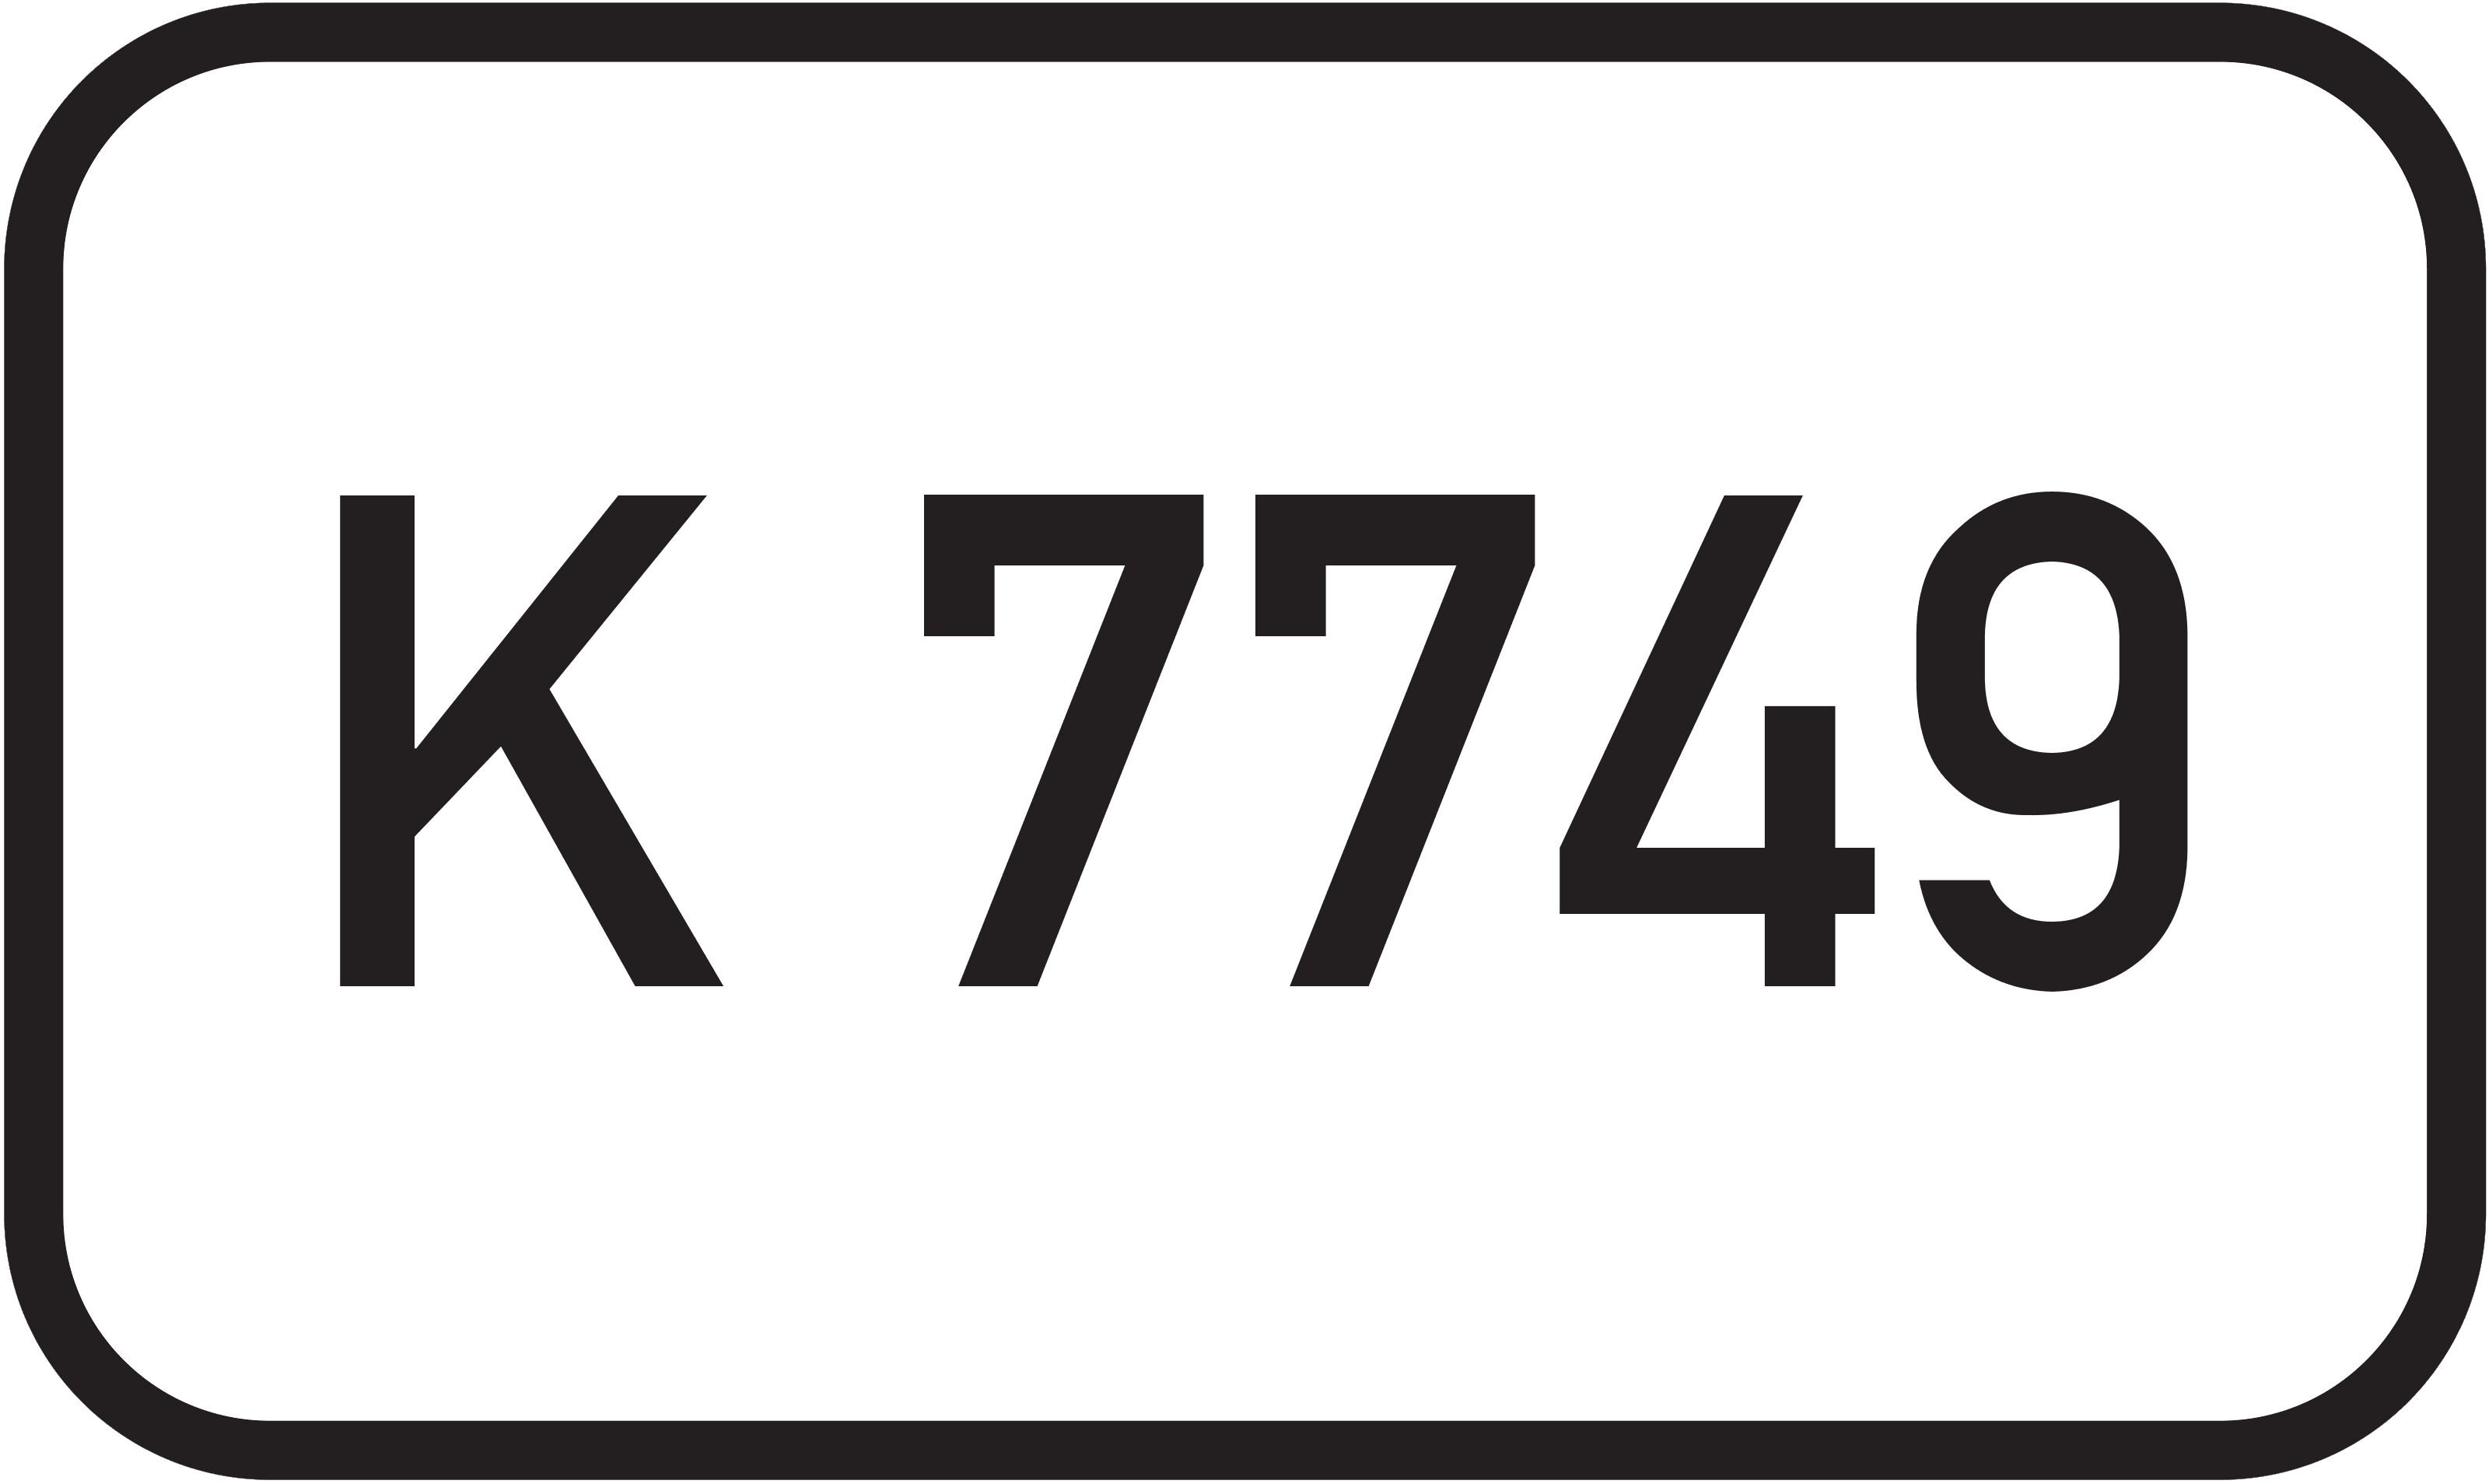 Kreisstraße K 7749